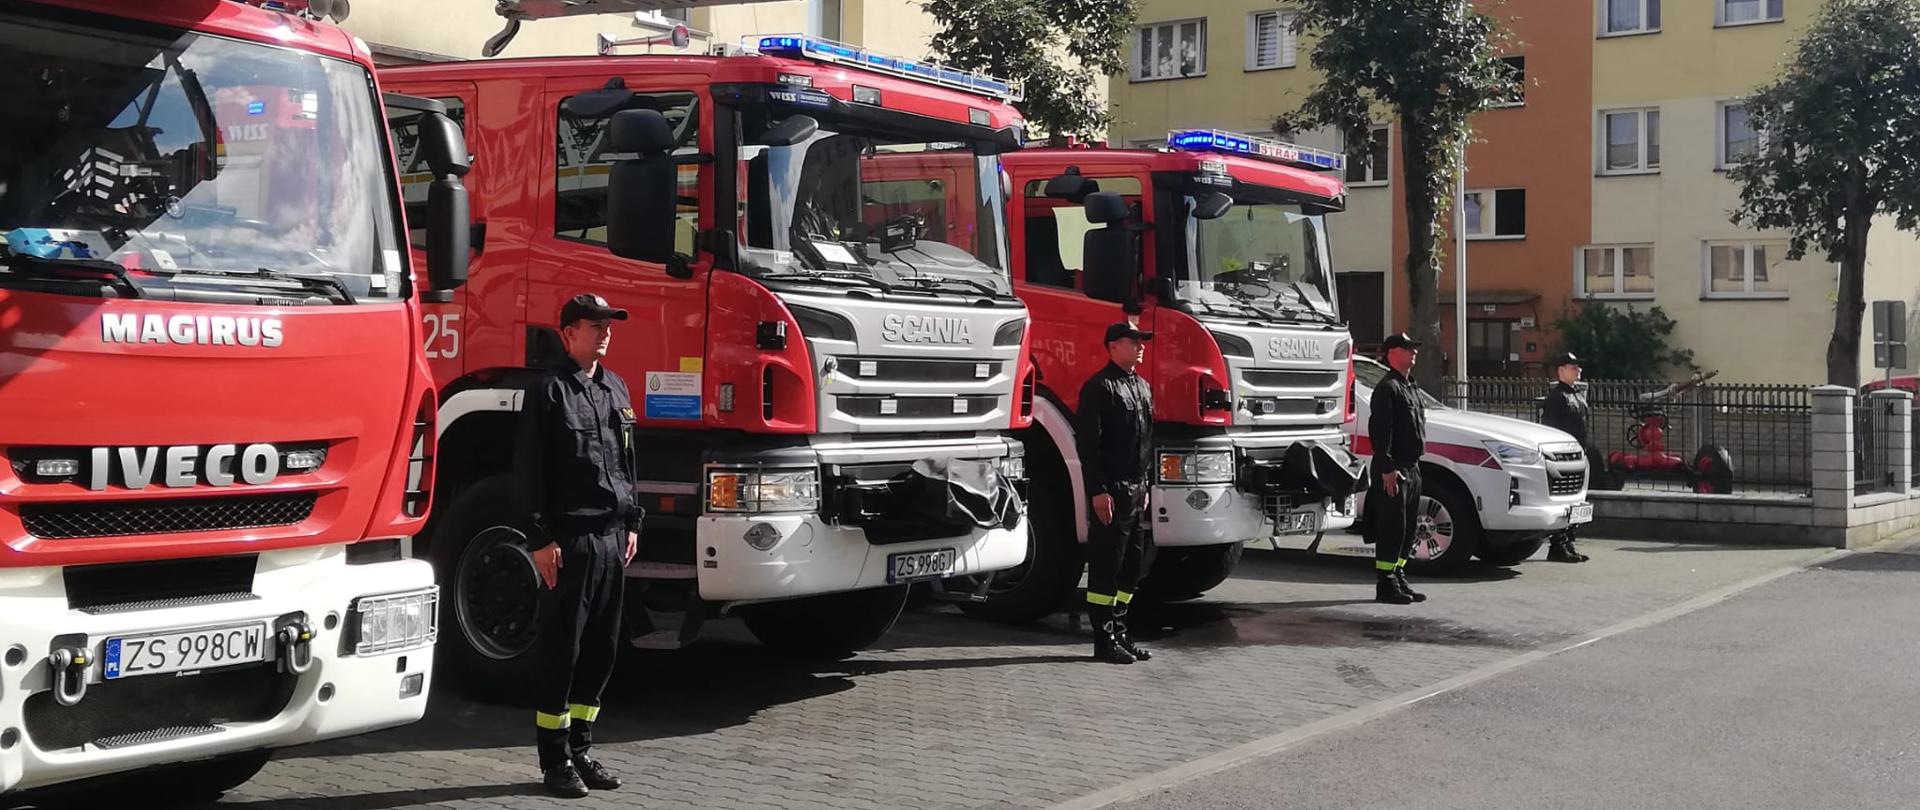 Zdjęcie przedstawia strażaków stojących w postawie zasadniczej pomiędzy samochodami pożarniczymi koloru czerwonego. Strażacy w umundurowaniu koszarowym koloru czarnego.